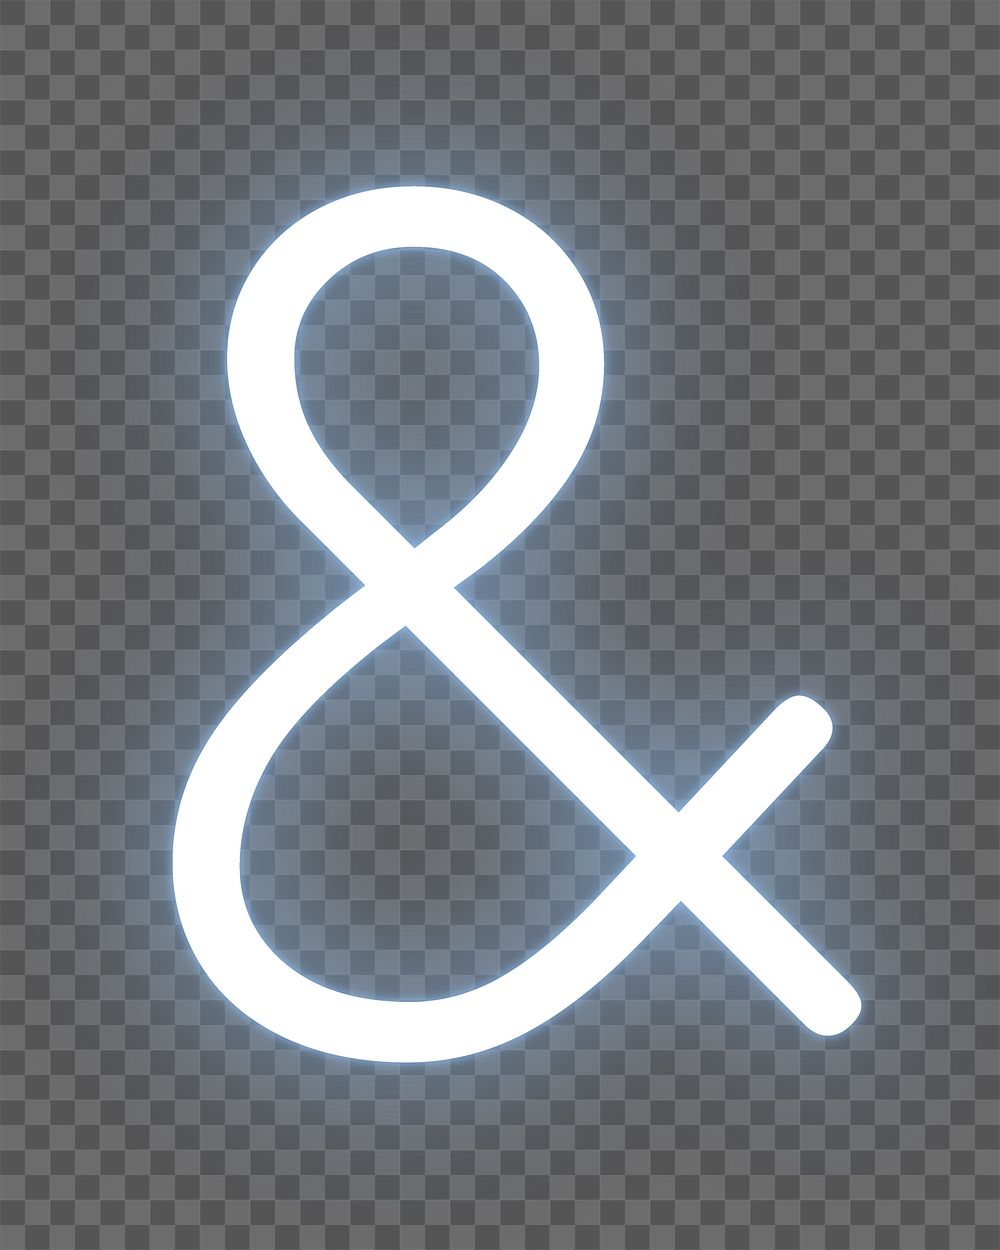 Ampersand sign png neon symbol, transparent background